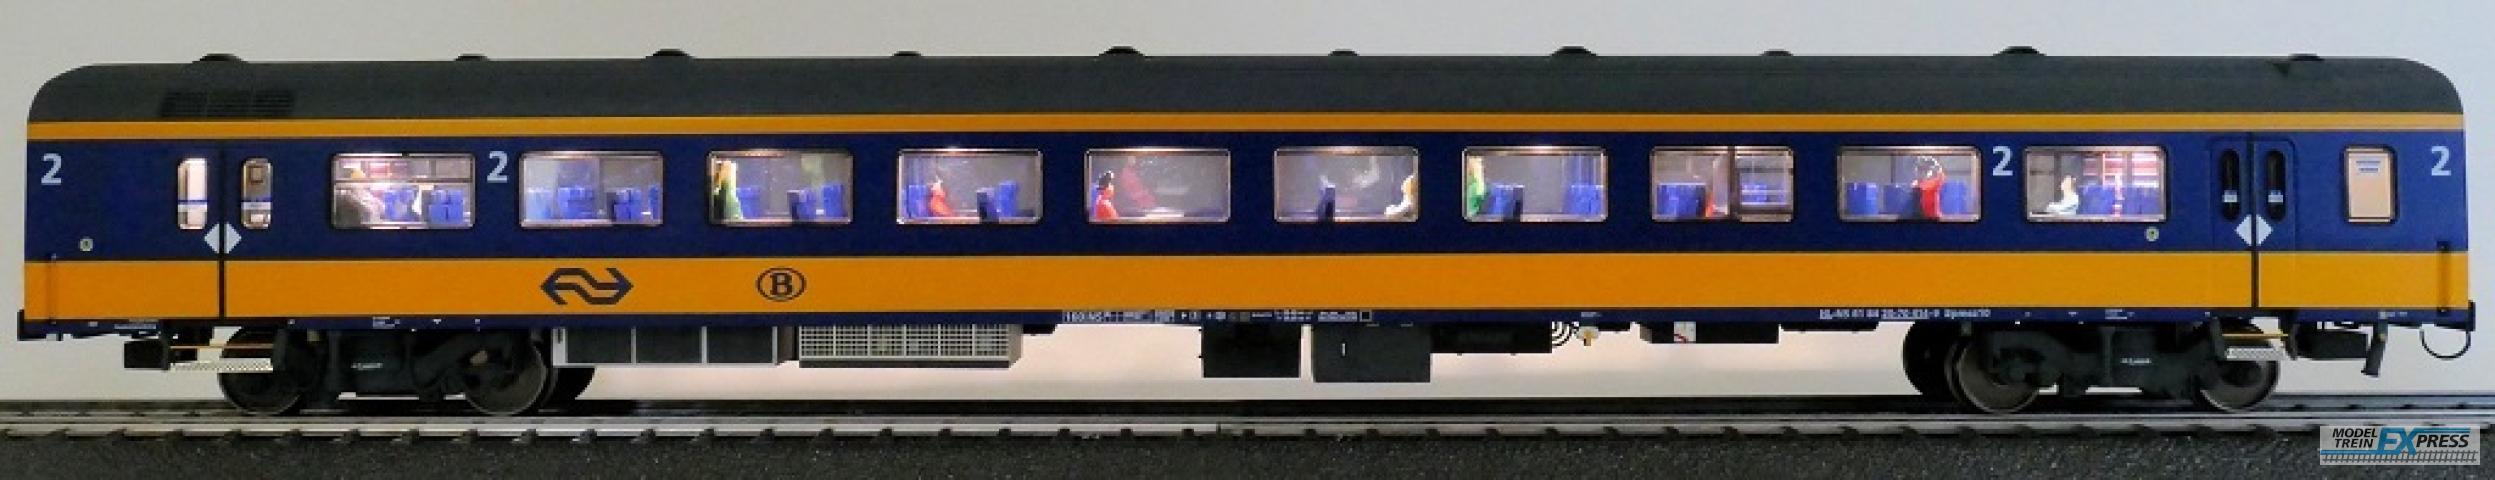 Exact-train 11157 NS ICRm (Amsterdam - Brussel) Endwagen Bpmez10 ( Farbe Gelb / Blau) mit Beleuchtung und Figuren, Ep. VI